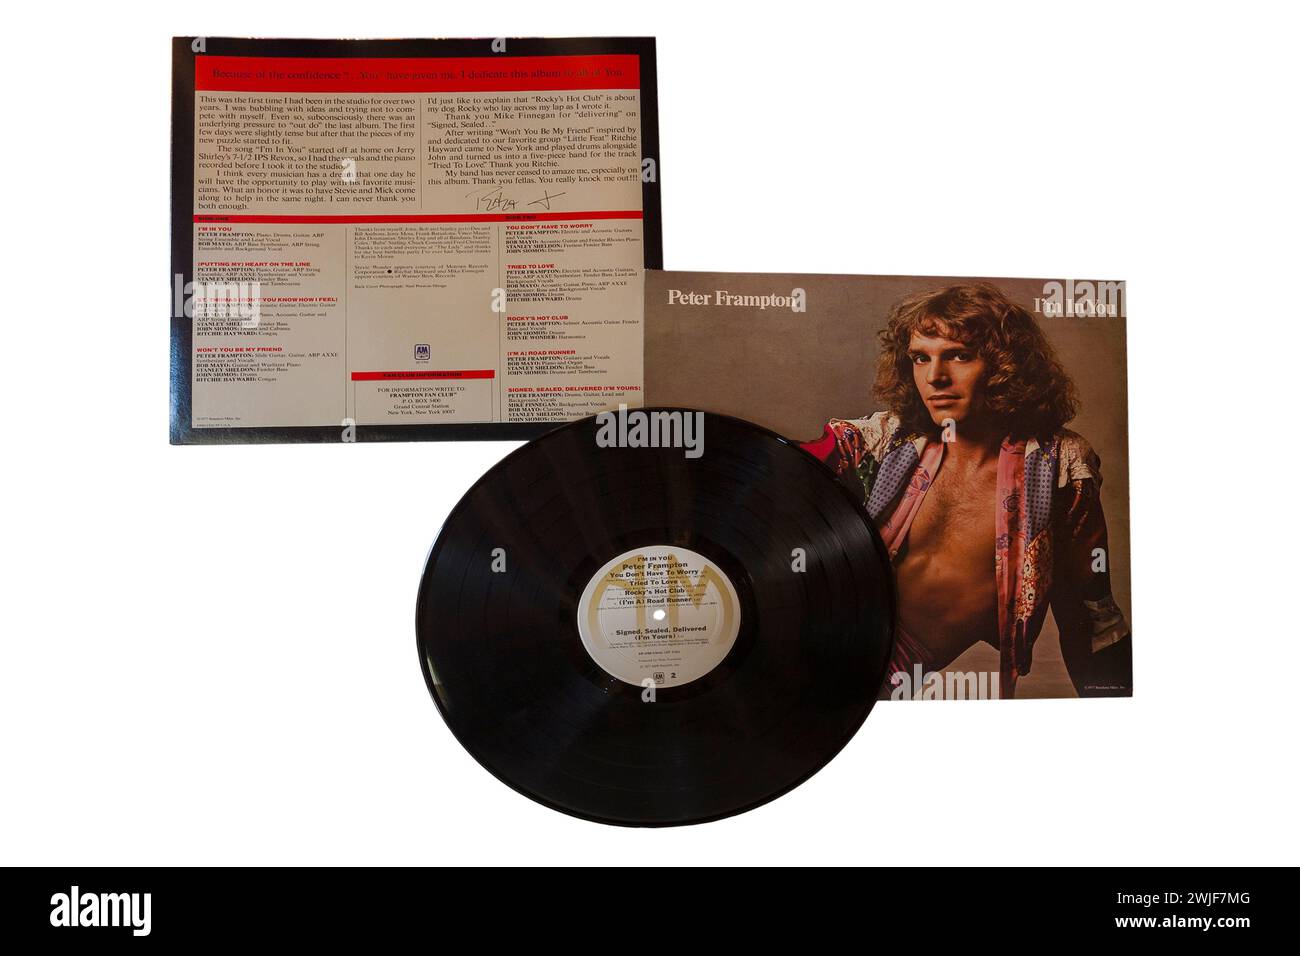 Peter Frampton i'm in You album vinile copertina LP isolata su sfondo bianco - 1977 Foto Stock